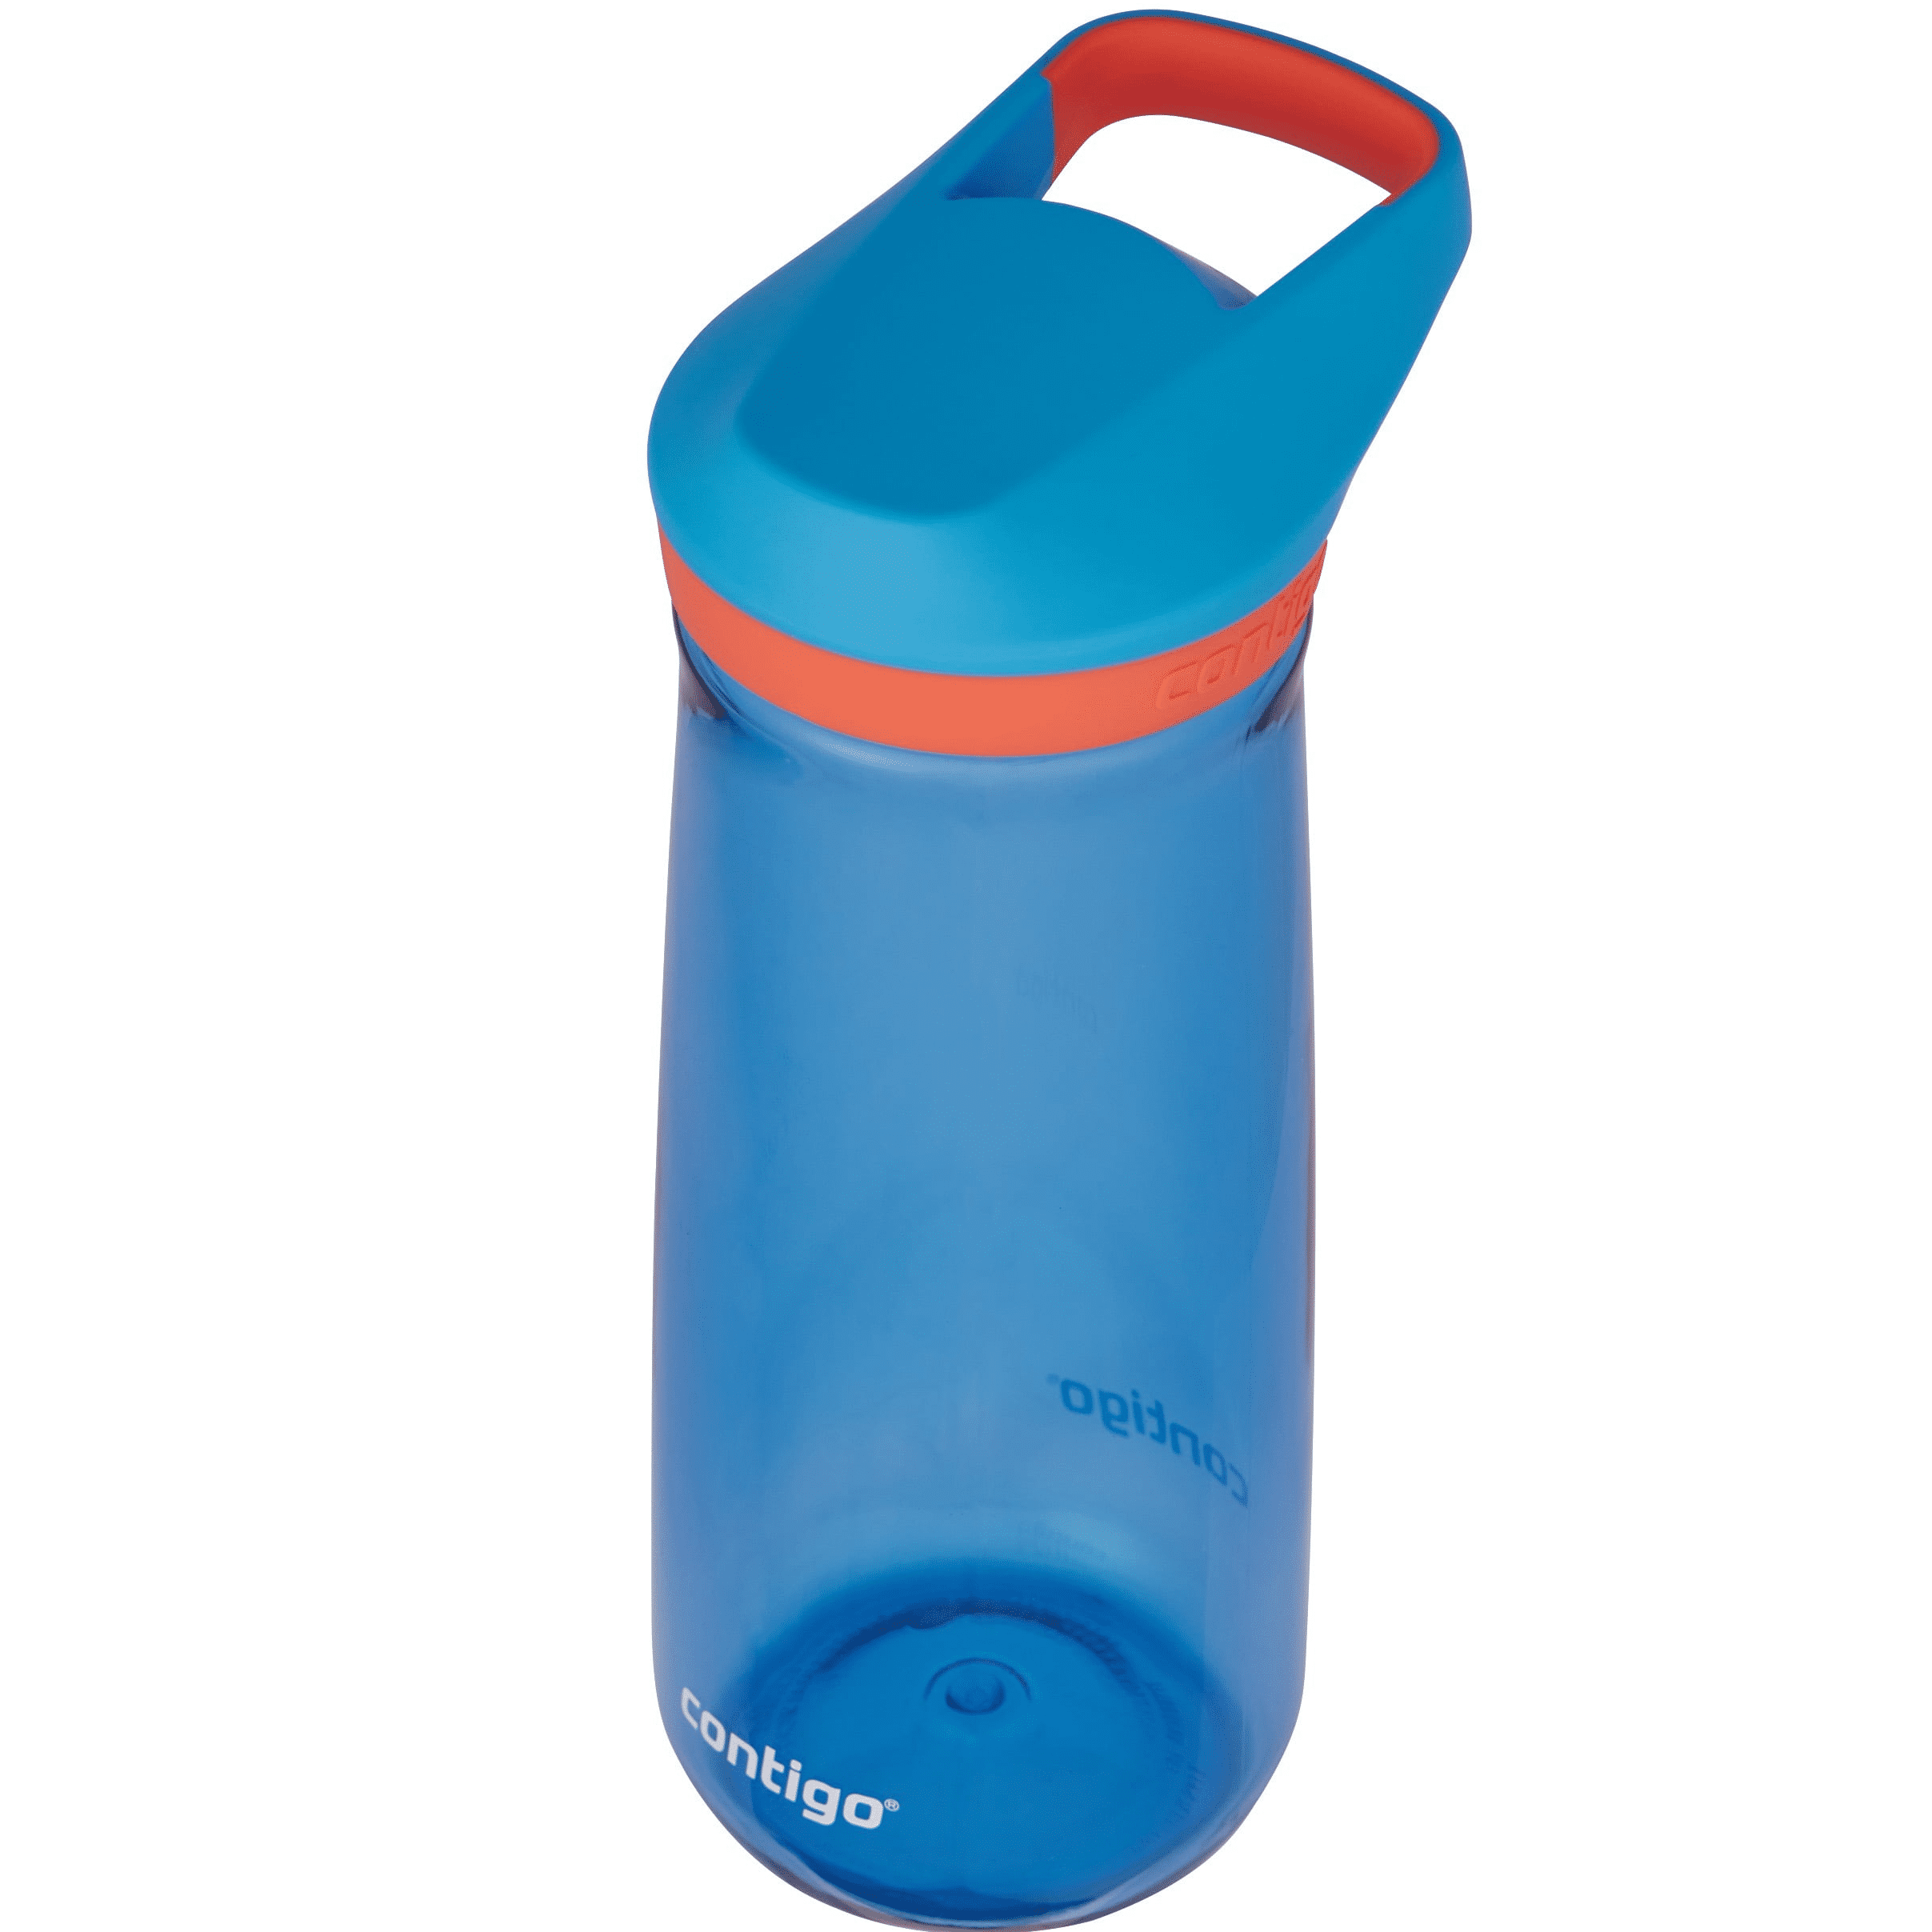 Contigo Kids Water Bottles — Sam's Simple Savings